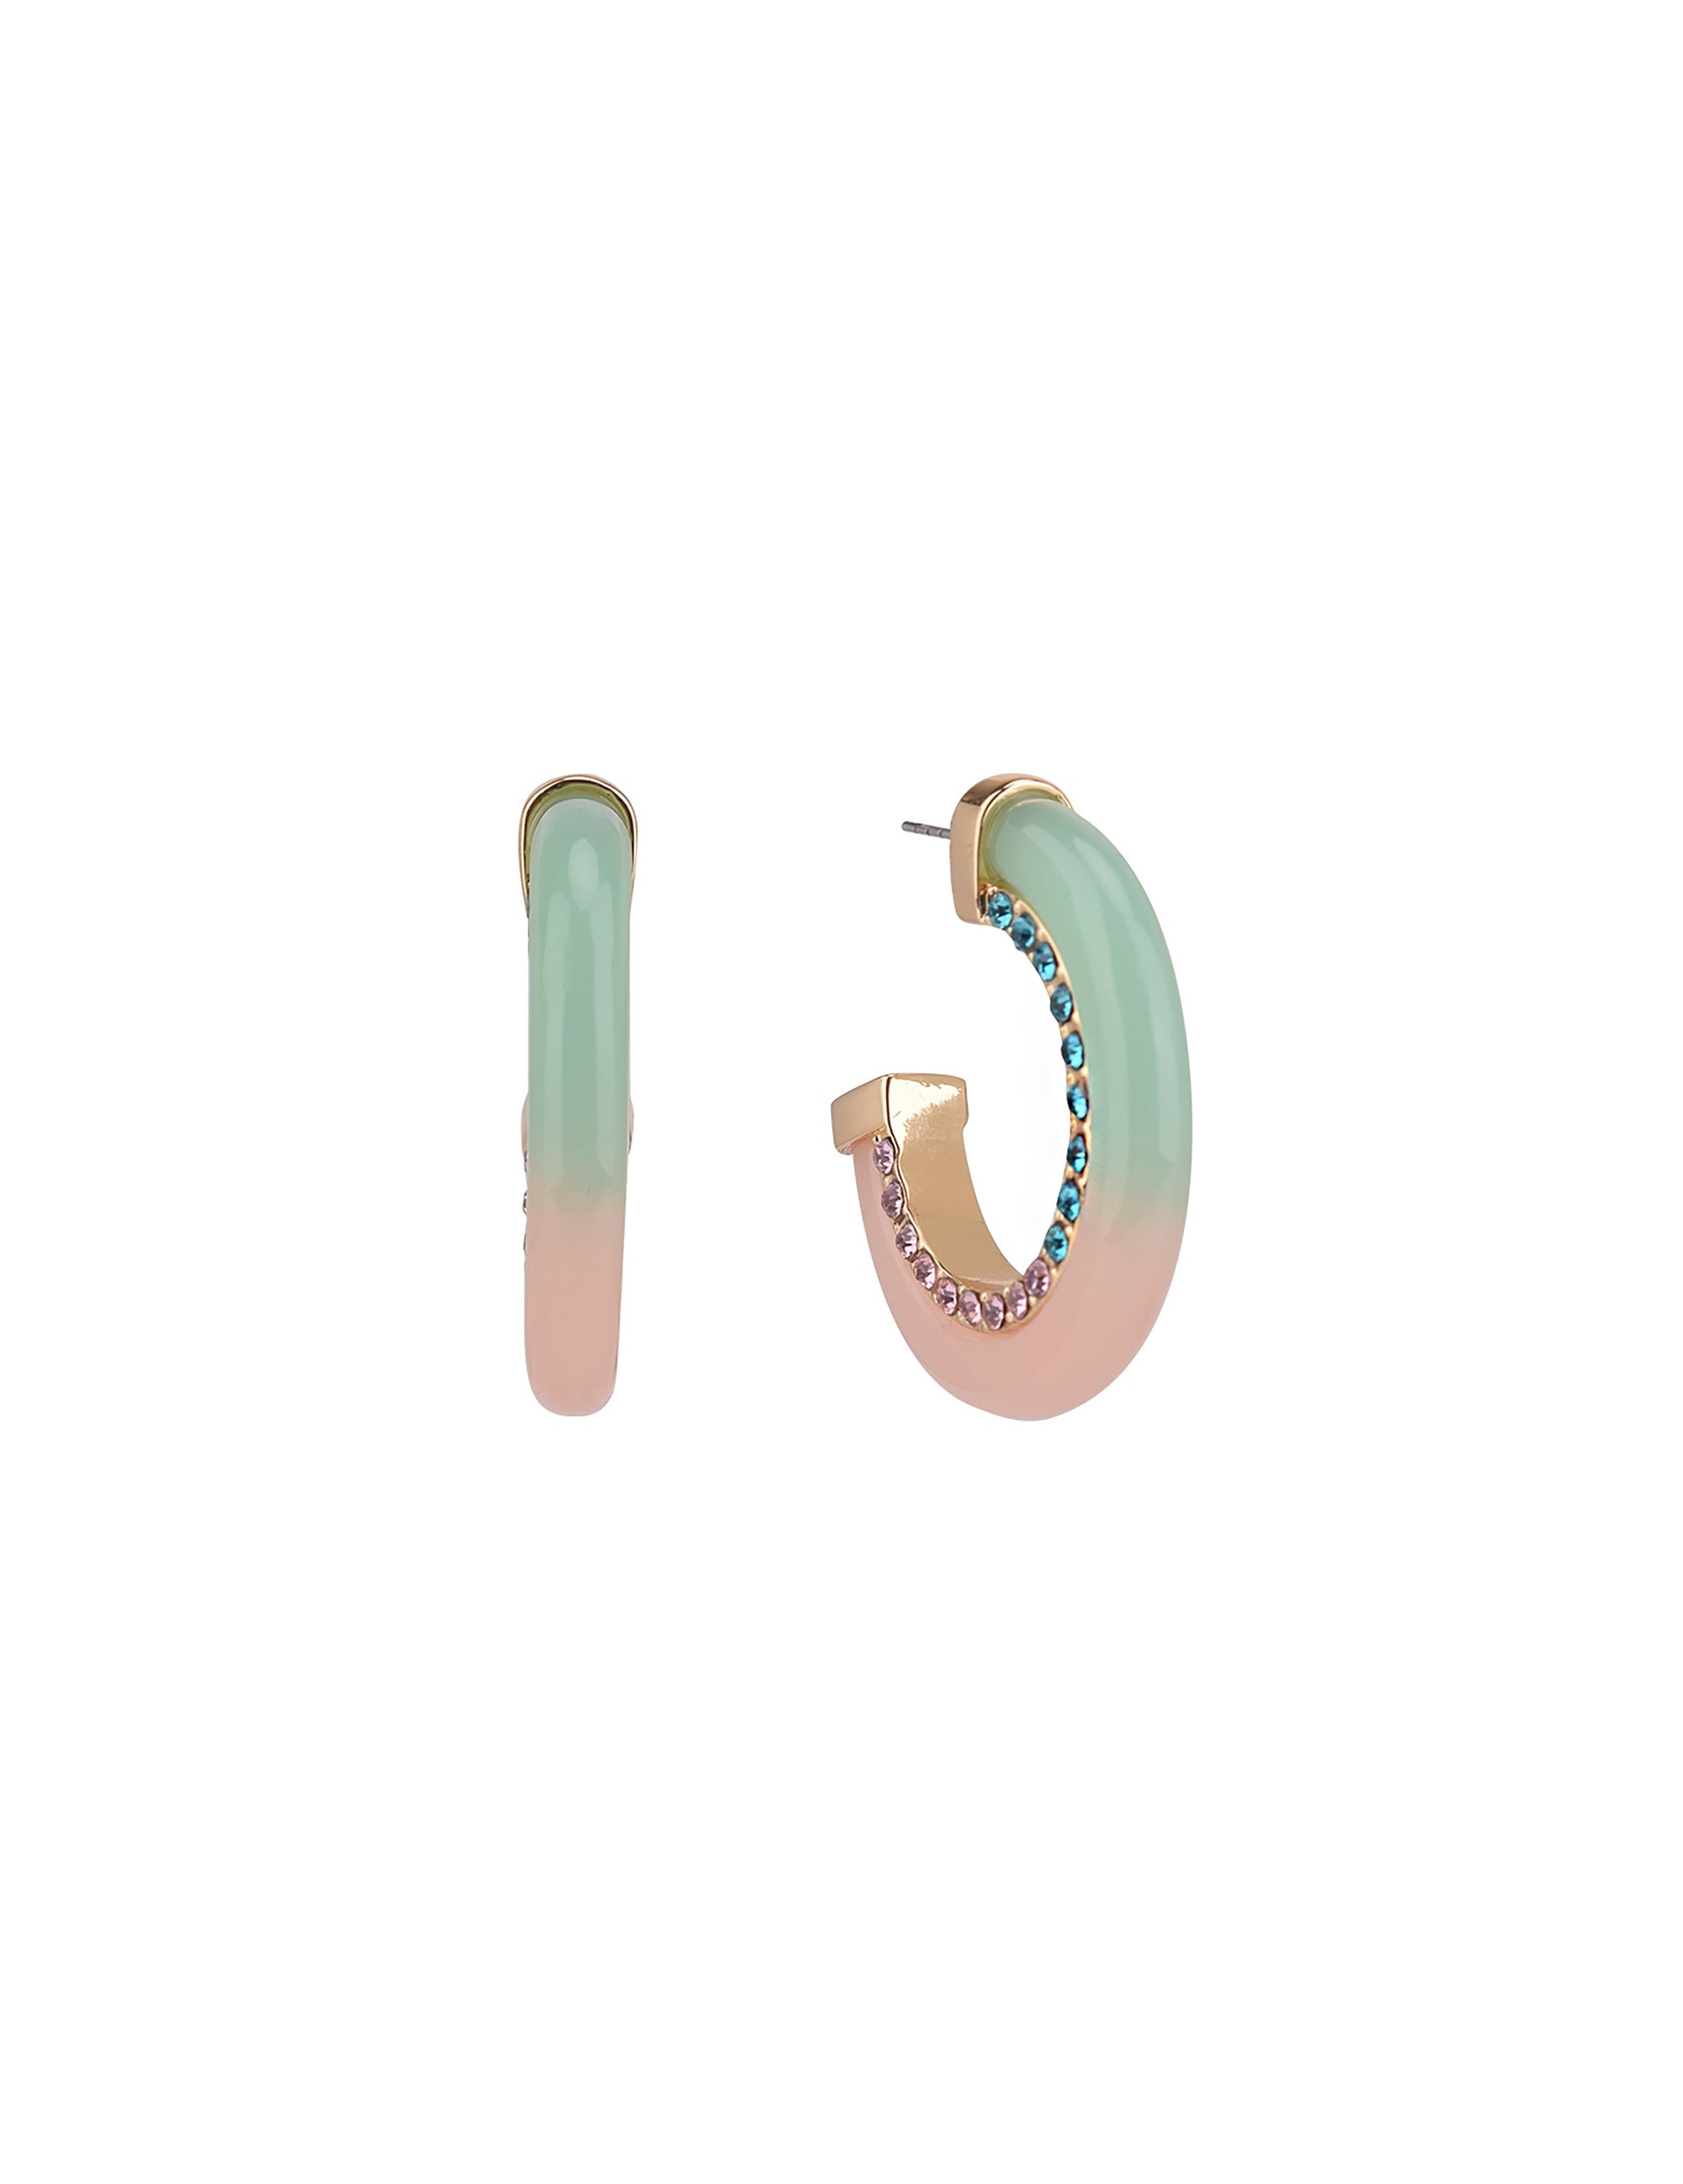 Acrylic Post Hoop Earrings with Stones